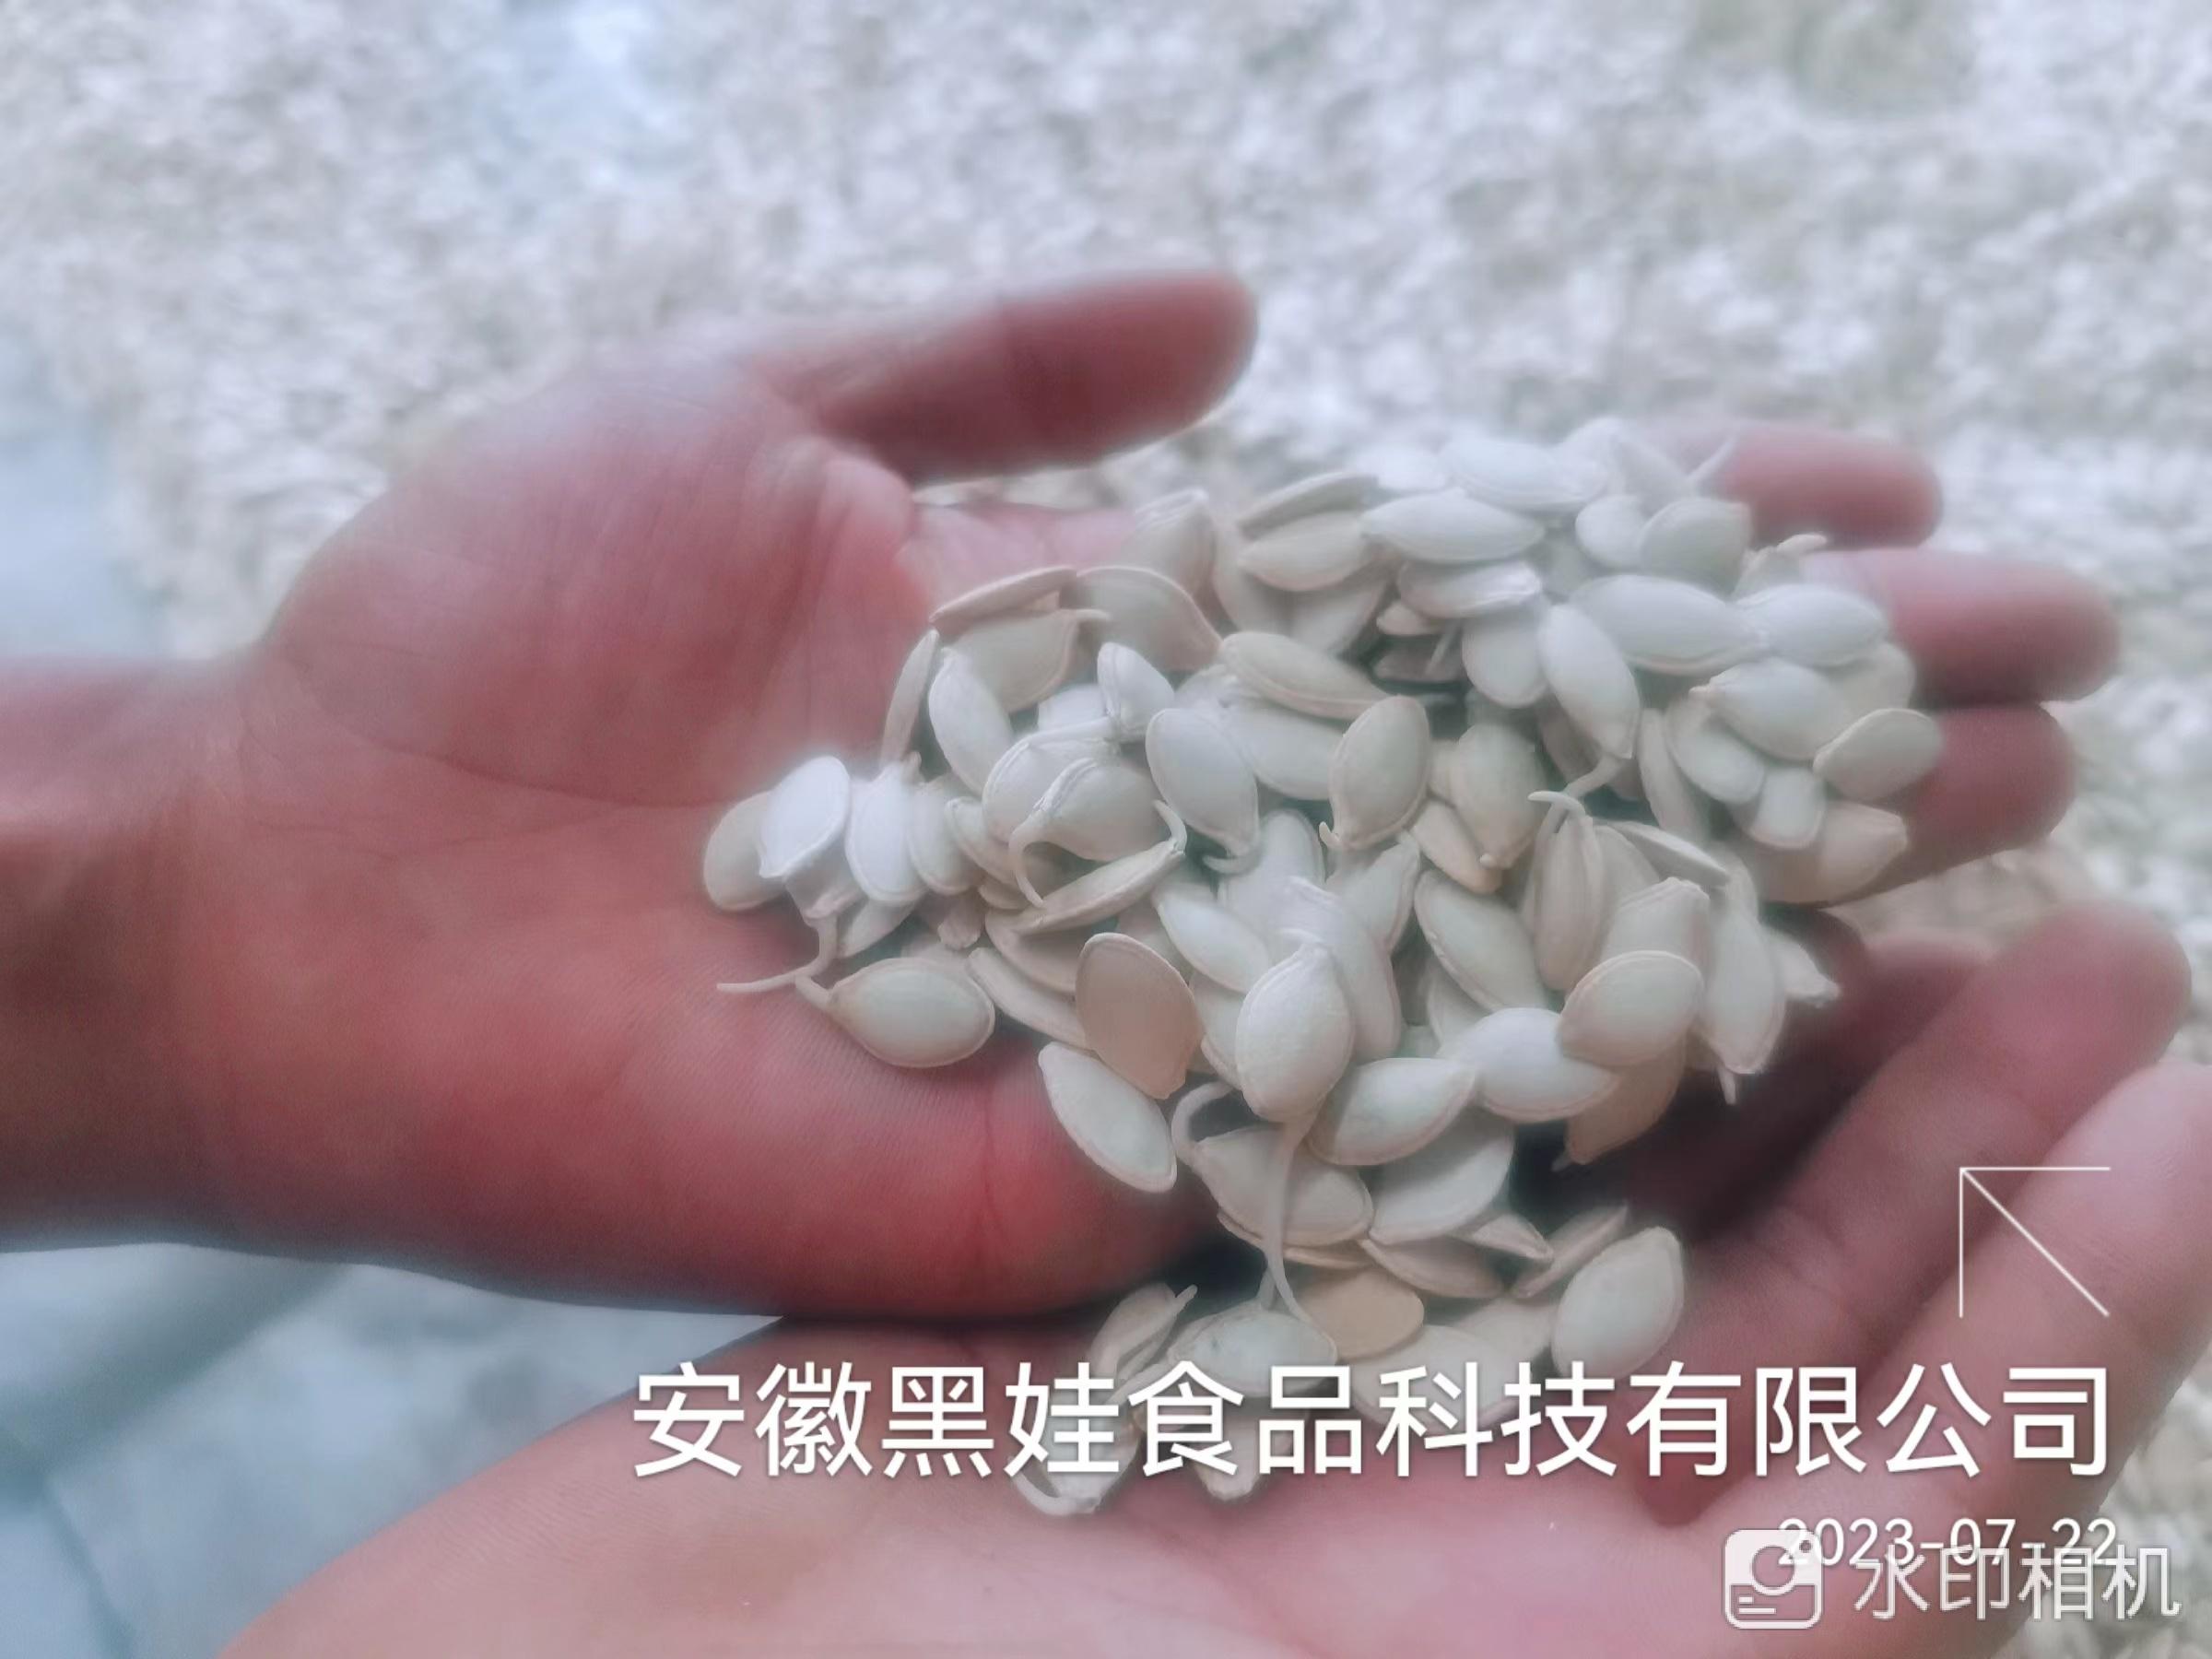 郝洲6.4吨葫芦籽拍卖公告